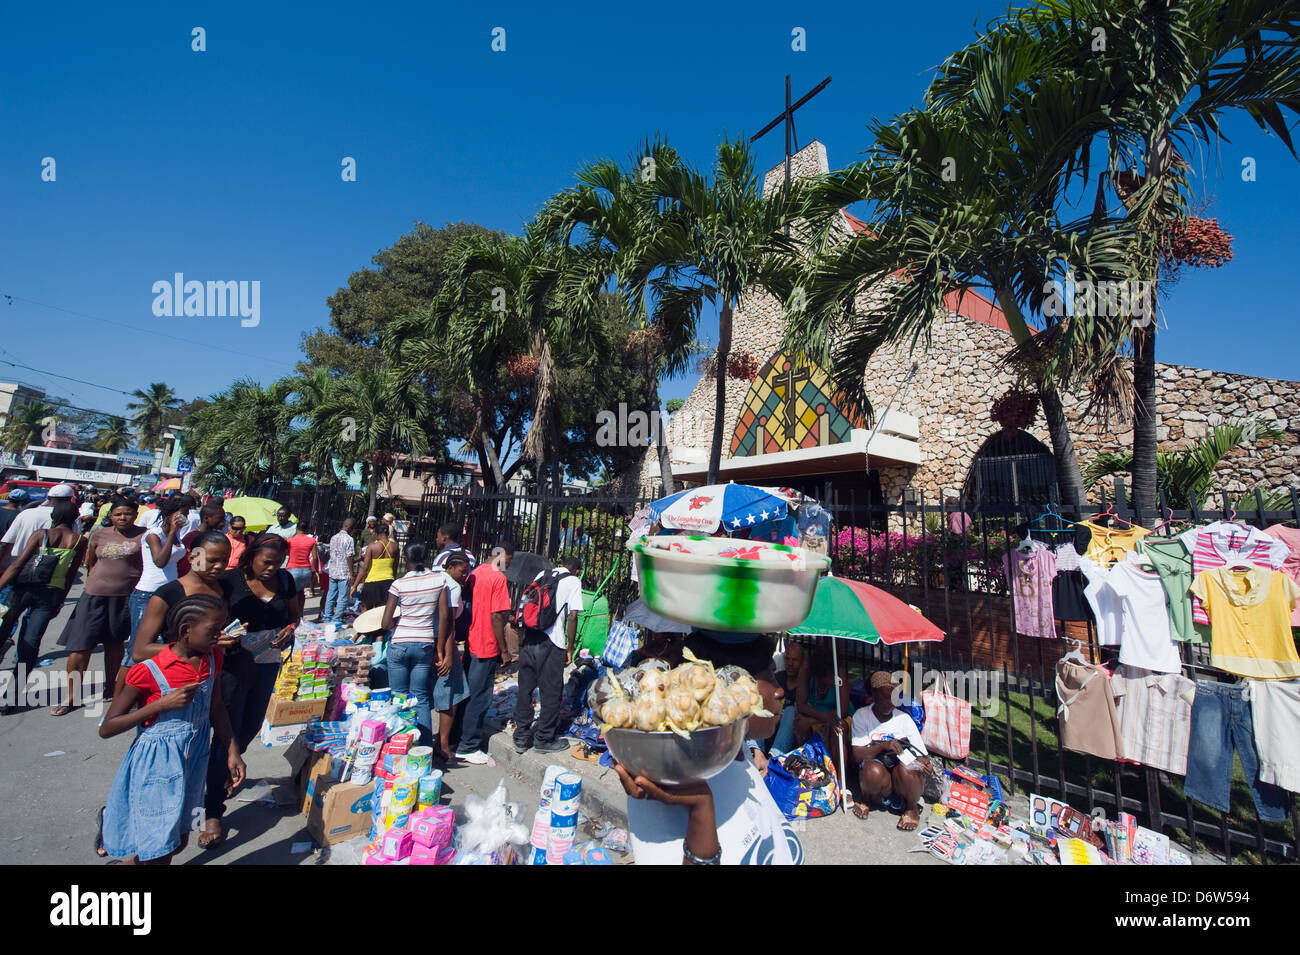 La rue du marché, Port-au-Prince, Haïti, Caraïbes Banque D'Images